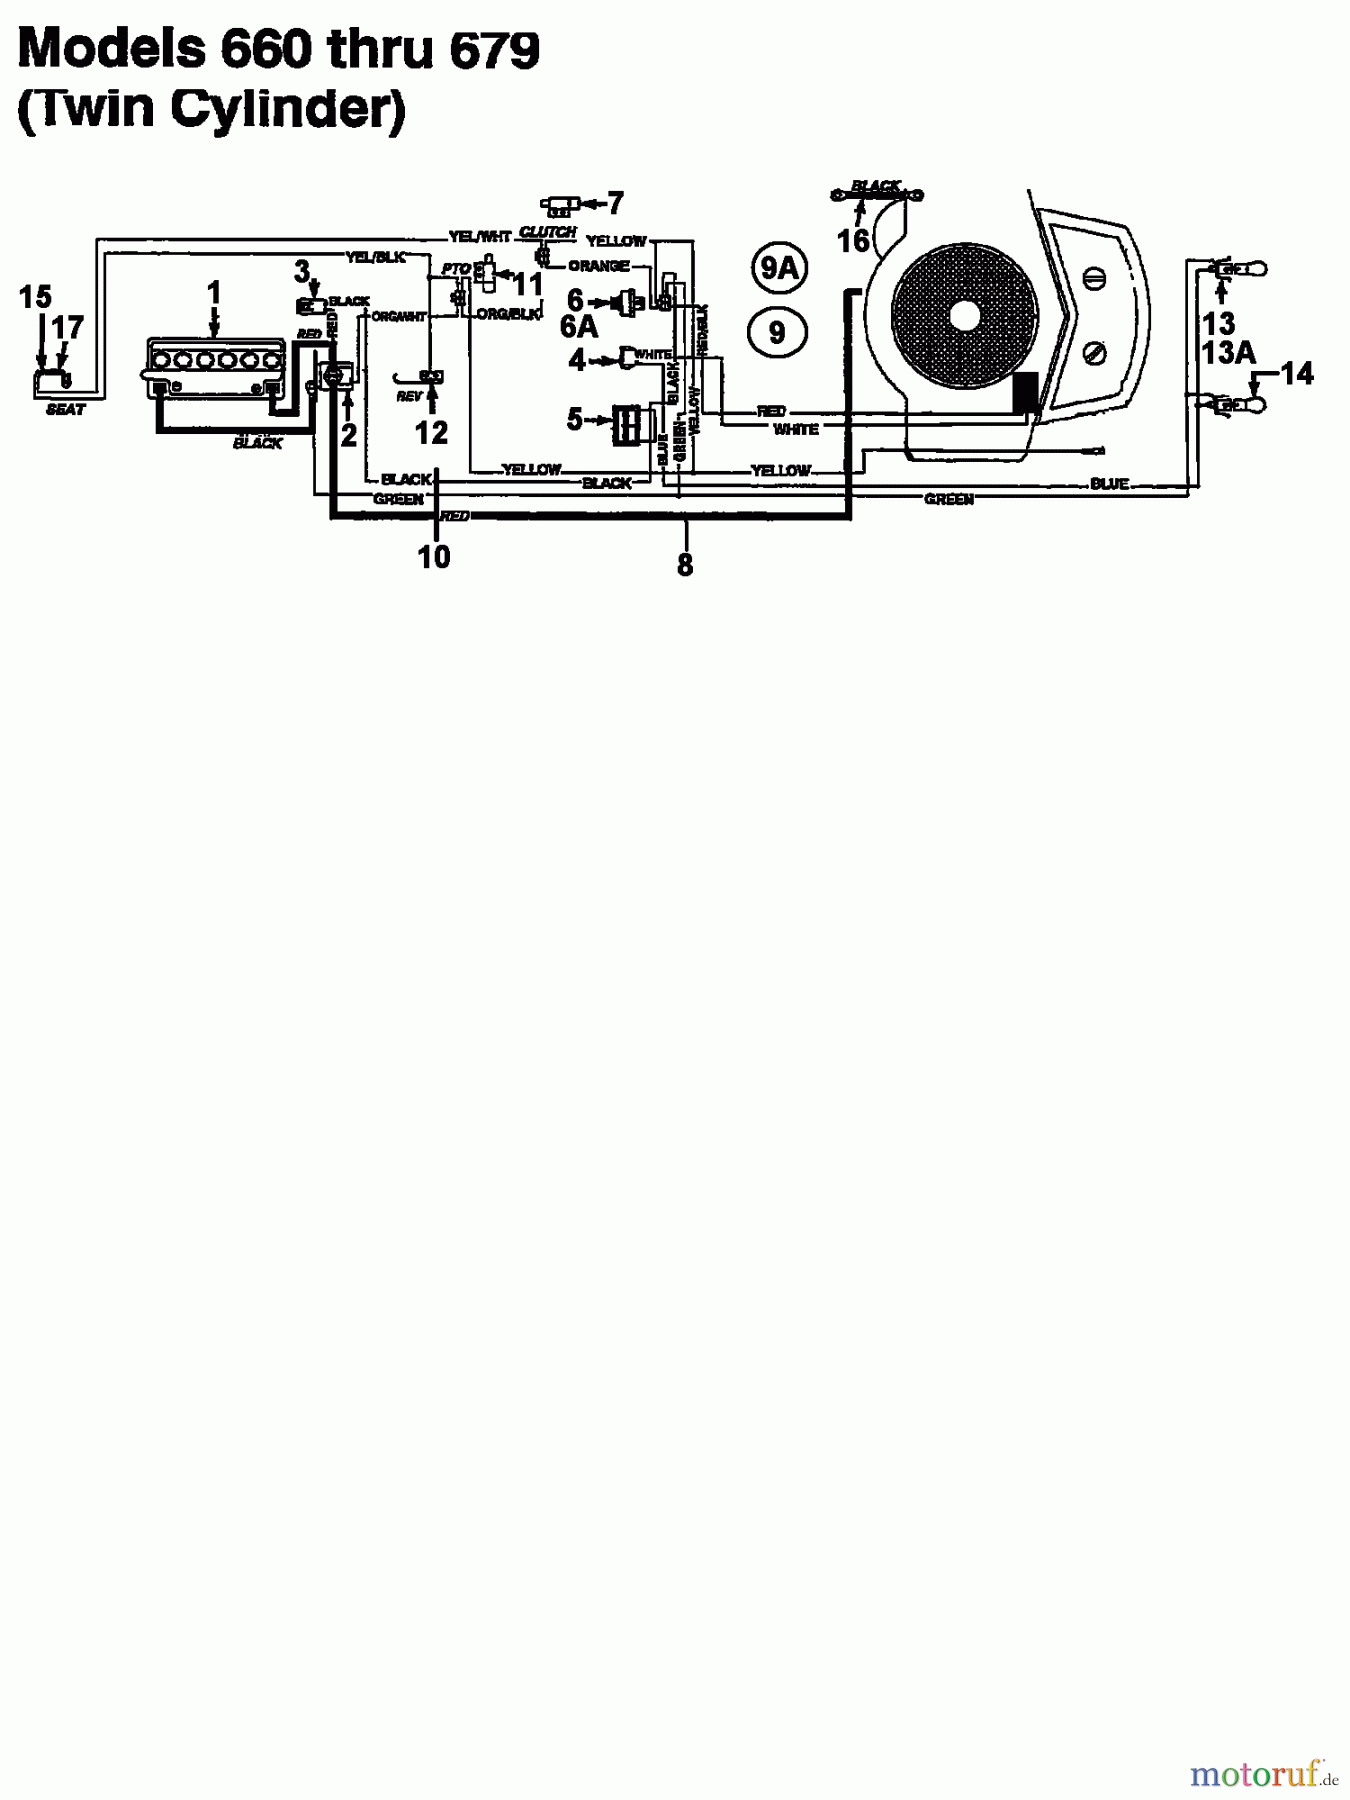  Columbia Tracteurs de pelouse 112/960 N 133K670F626  (1993) Plan électrique 2 cylindre